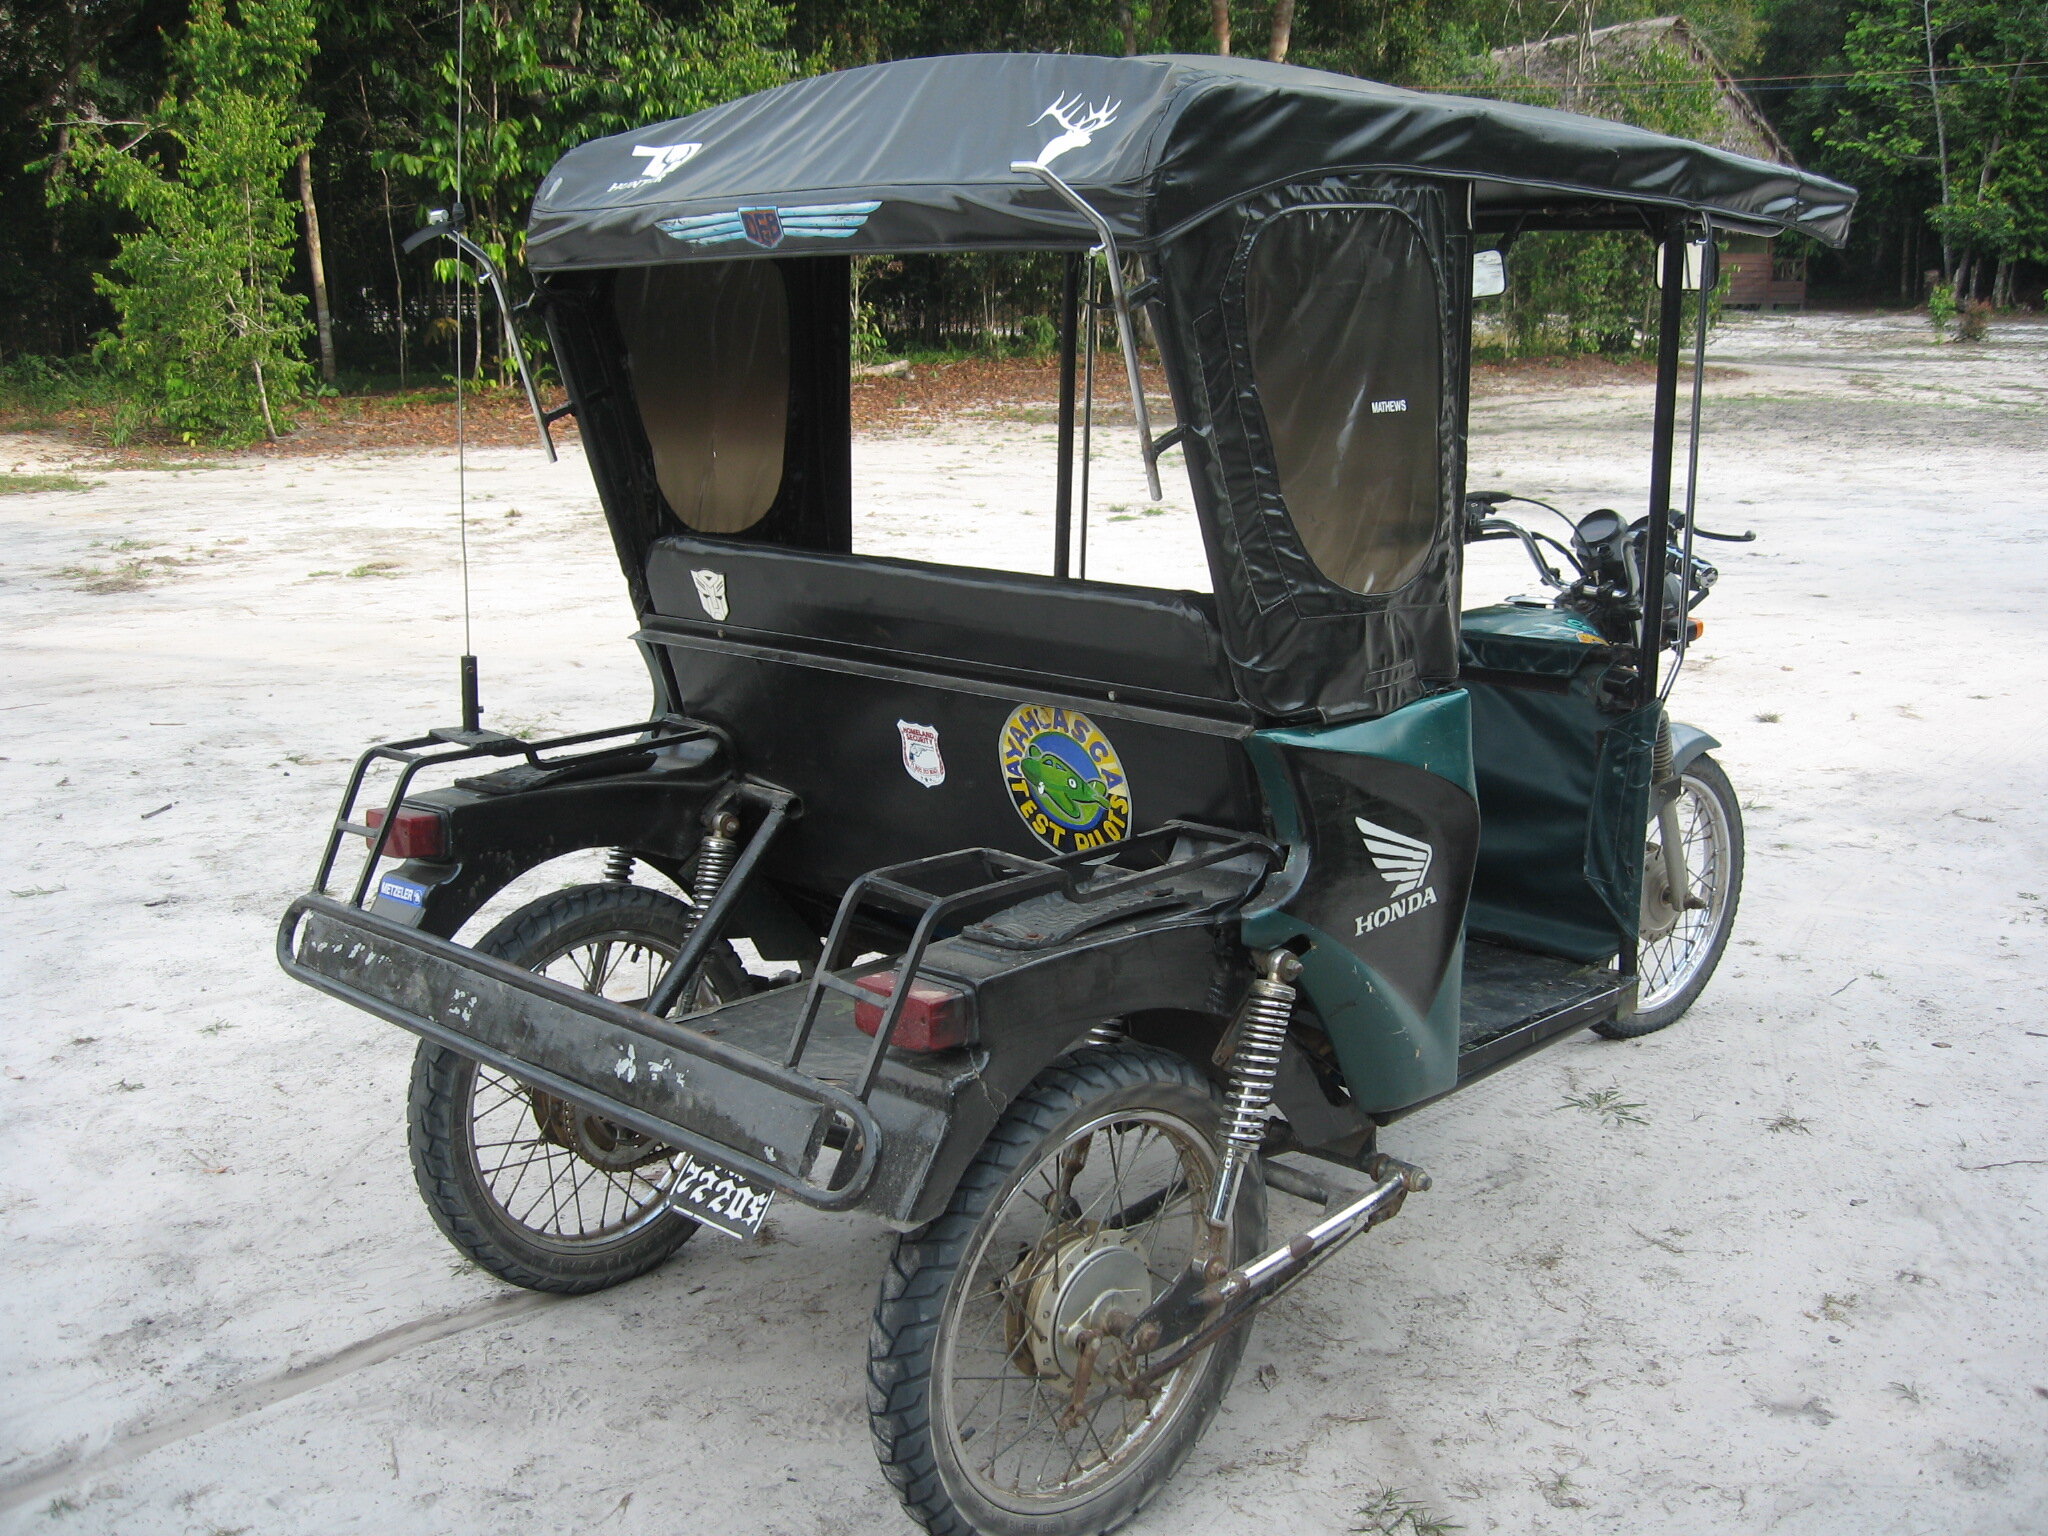 Mototaxi in Iquitos, Peru